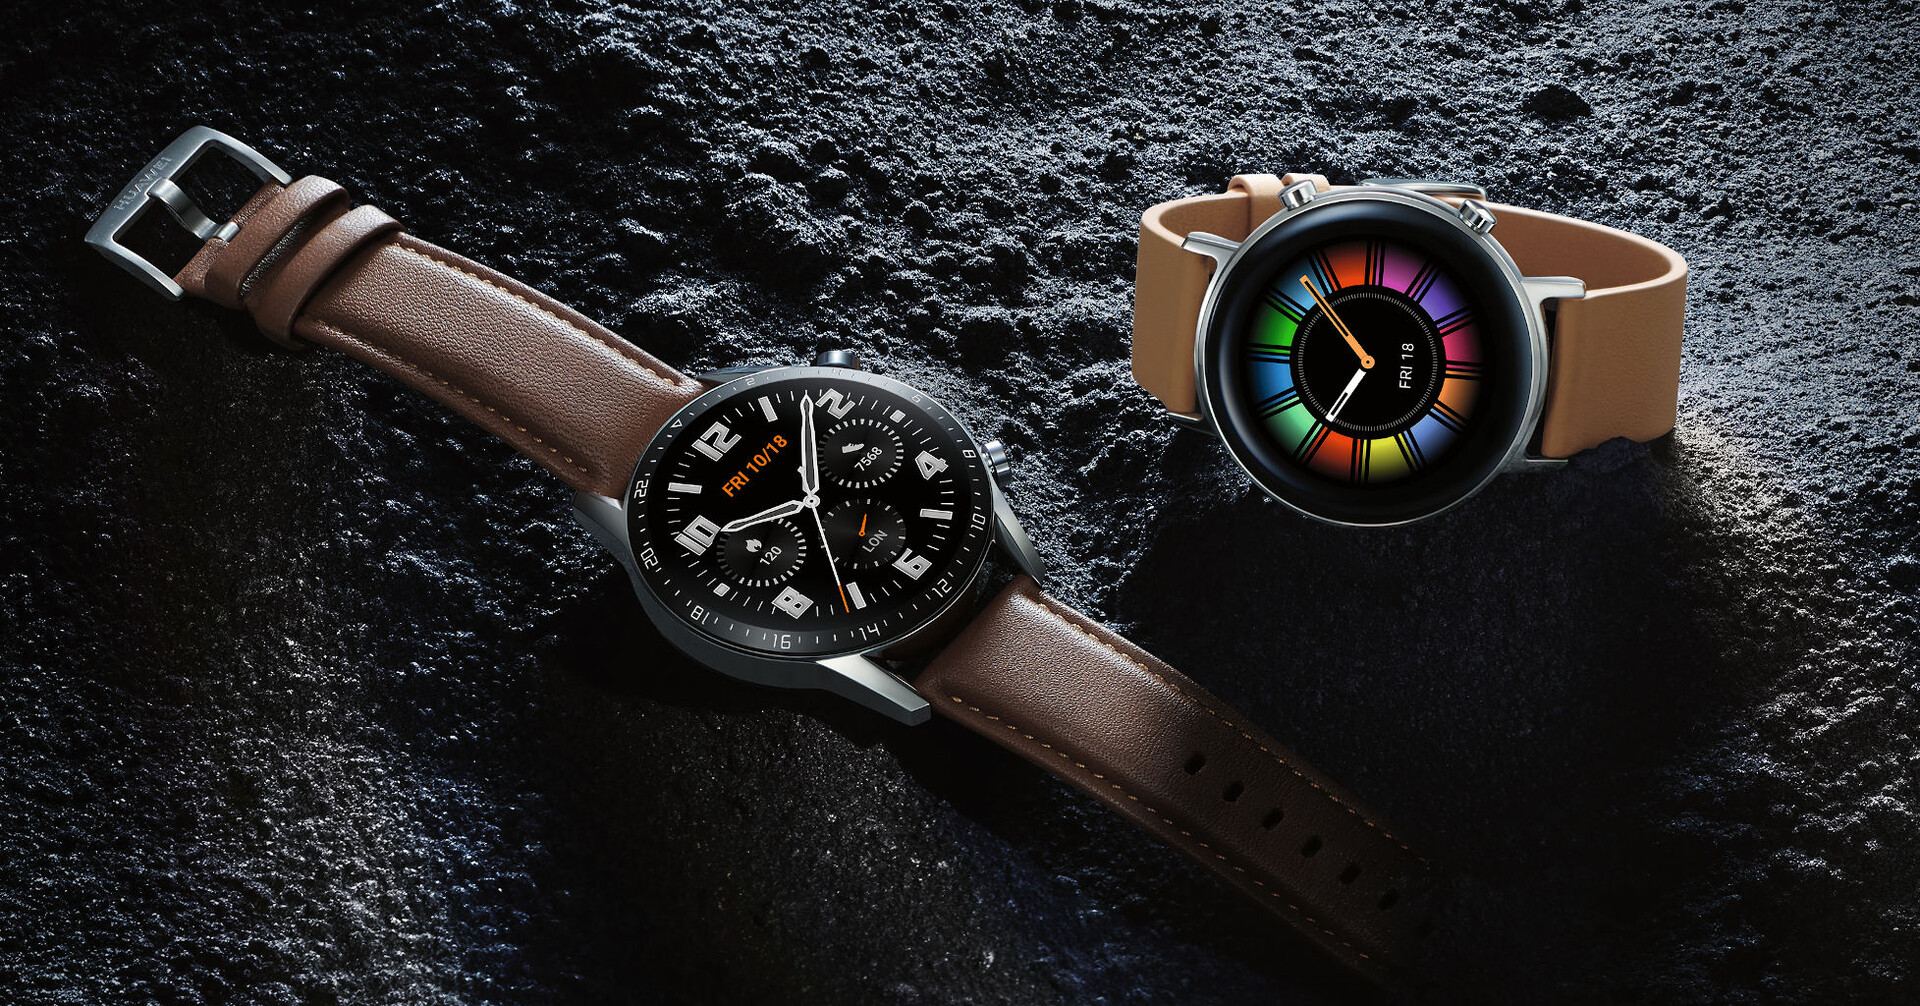 Gli smartwatch Huawei Watch GT 2 e Watch GT 2e ricevono un aggiornamento per consentire il download di app di terze parti